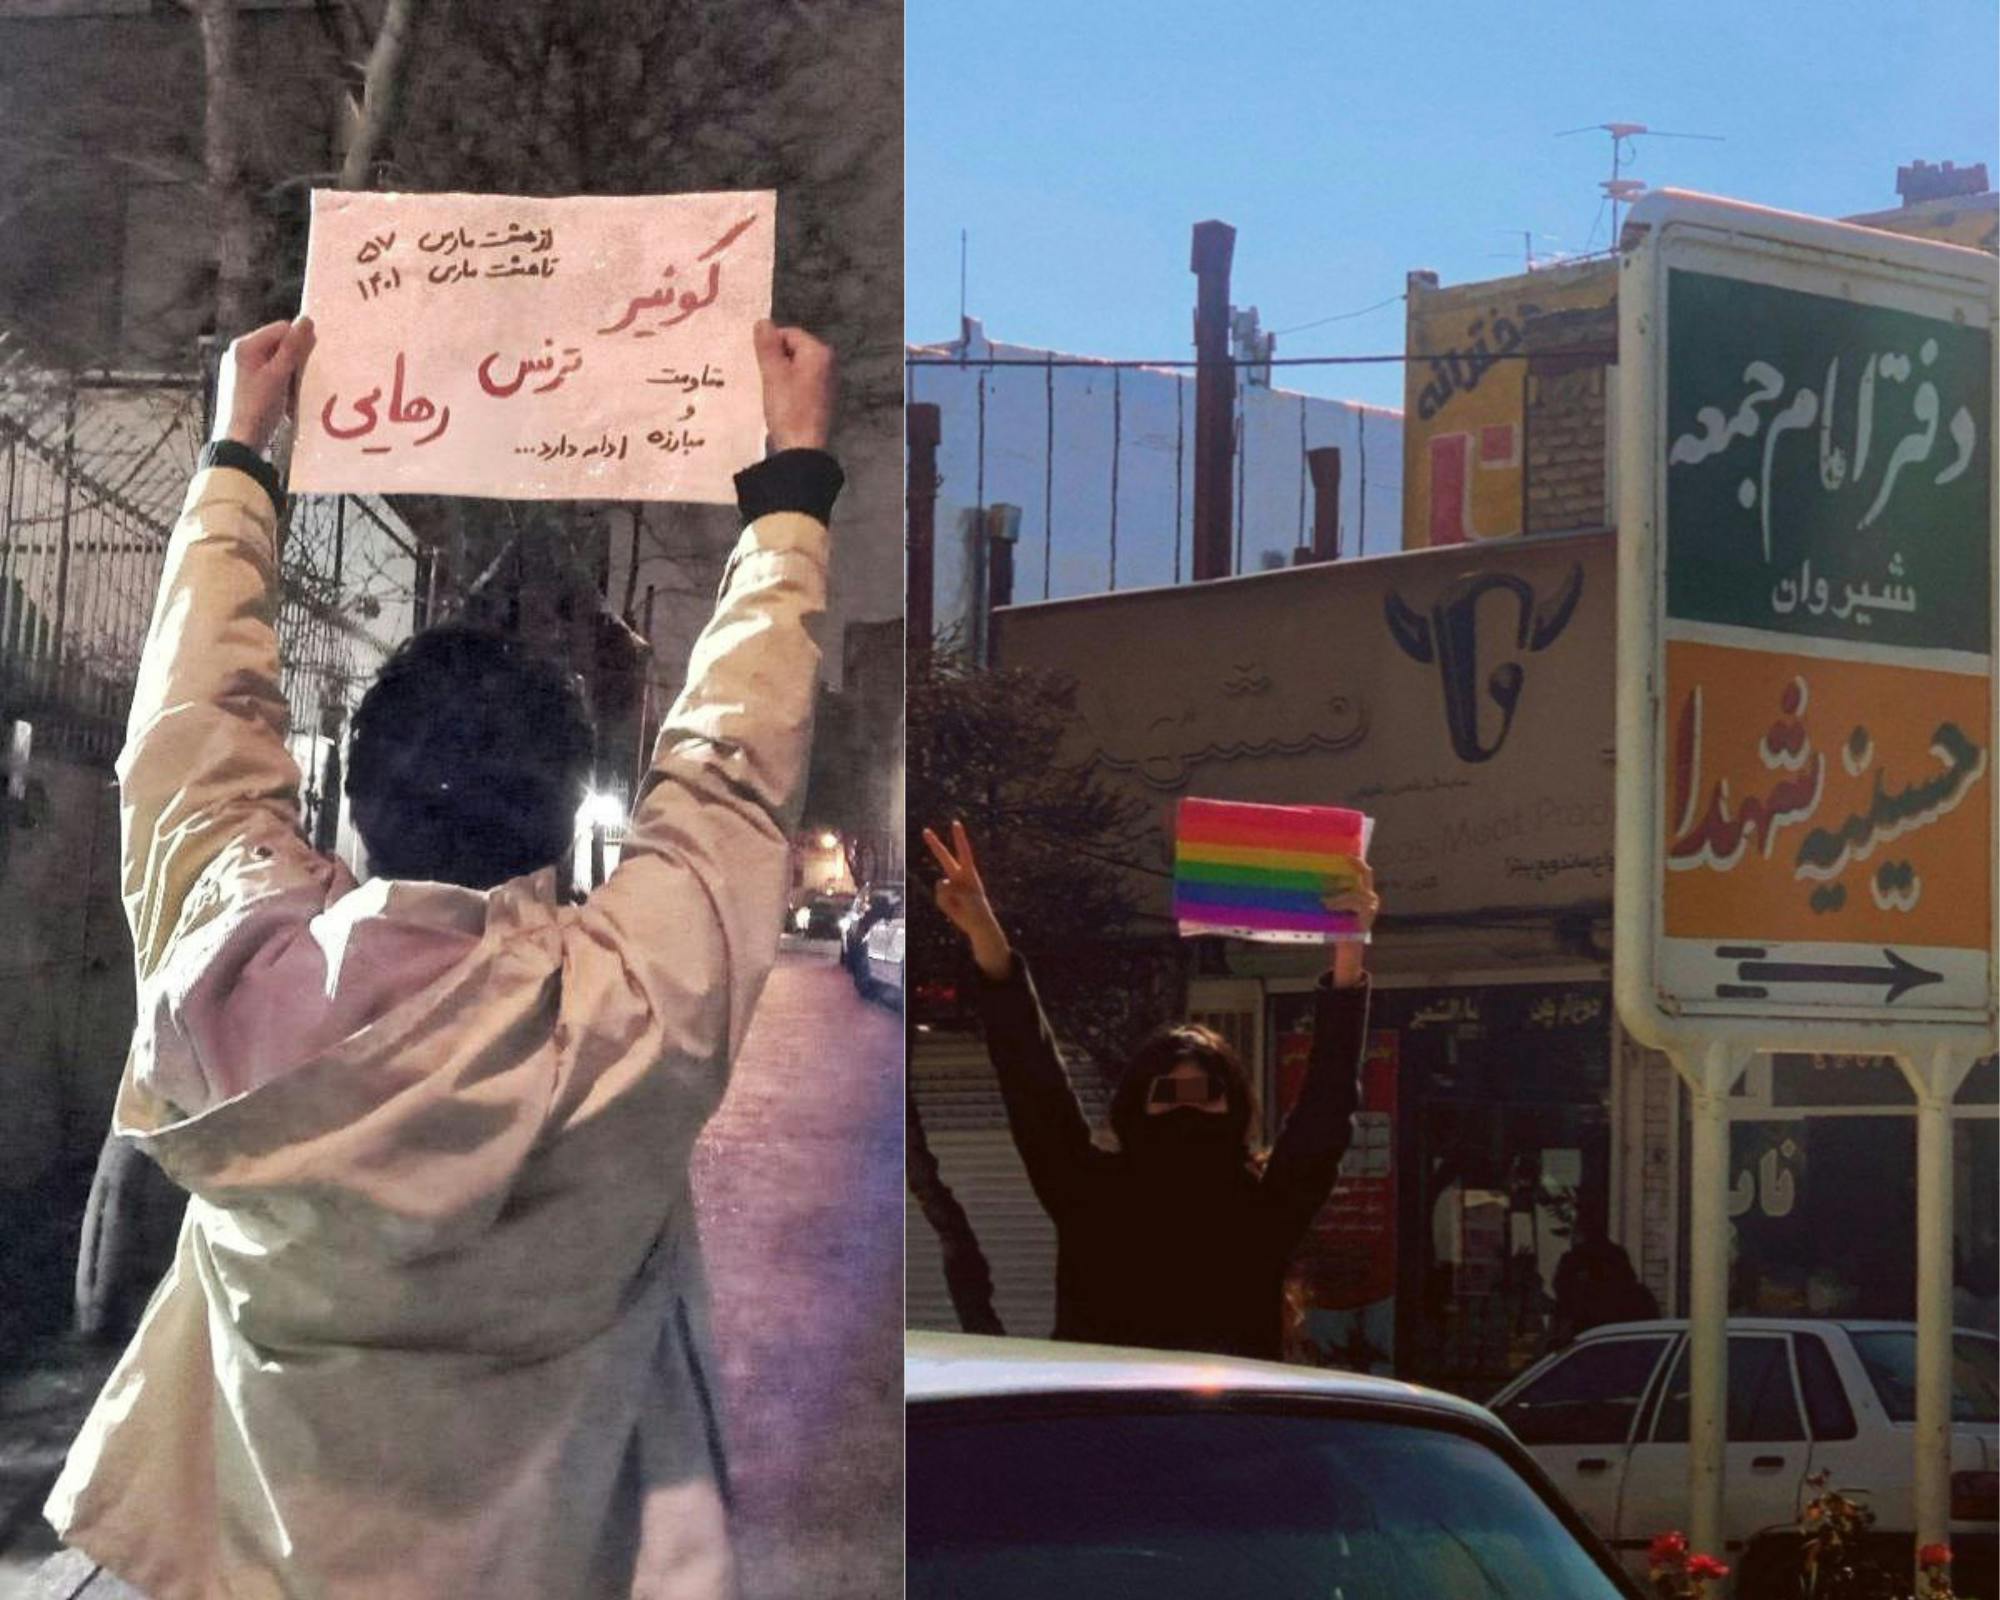 در یک طرف عکس، یک معترض جنبش «زن زندگی آزادی» دیده می‌شود که کاغذی بر دست گرفته و بر رویش نوشته شده «کوئیر ترنس رهایی» در بقیه تصویر، یک معترض کوییر در یک شهرستان ایران دیده می‌شود.